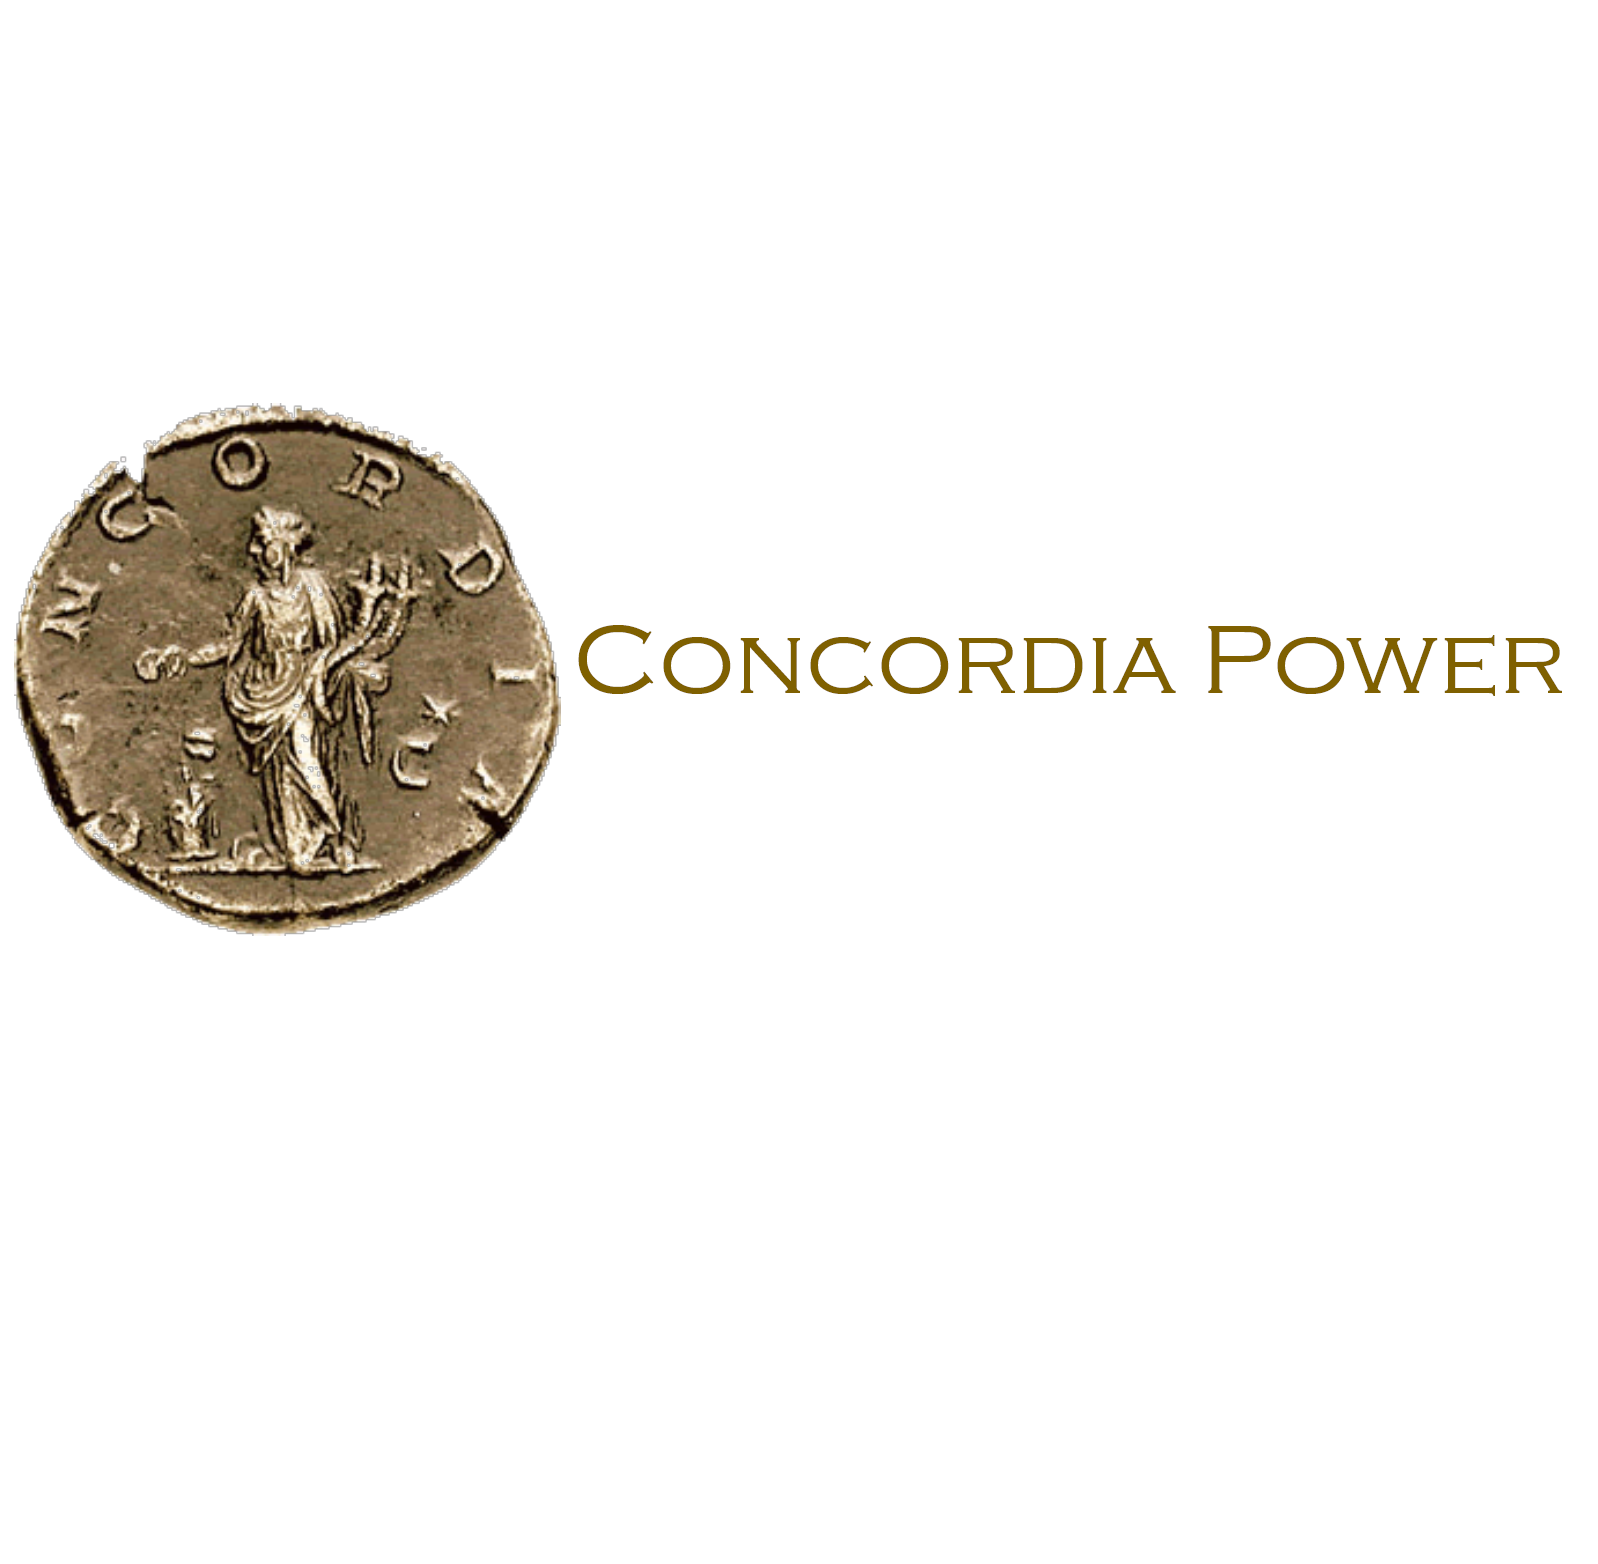 Concordia Power